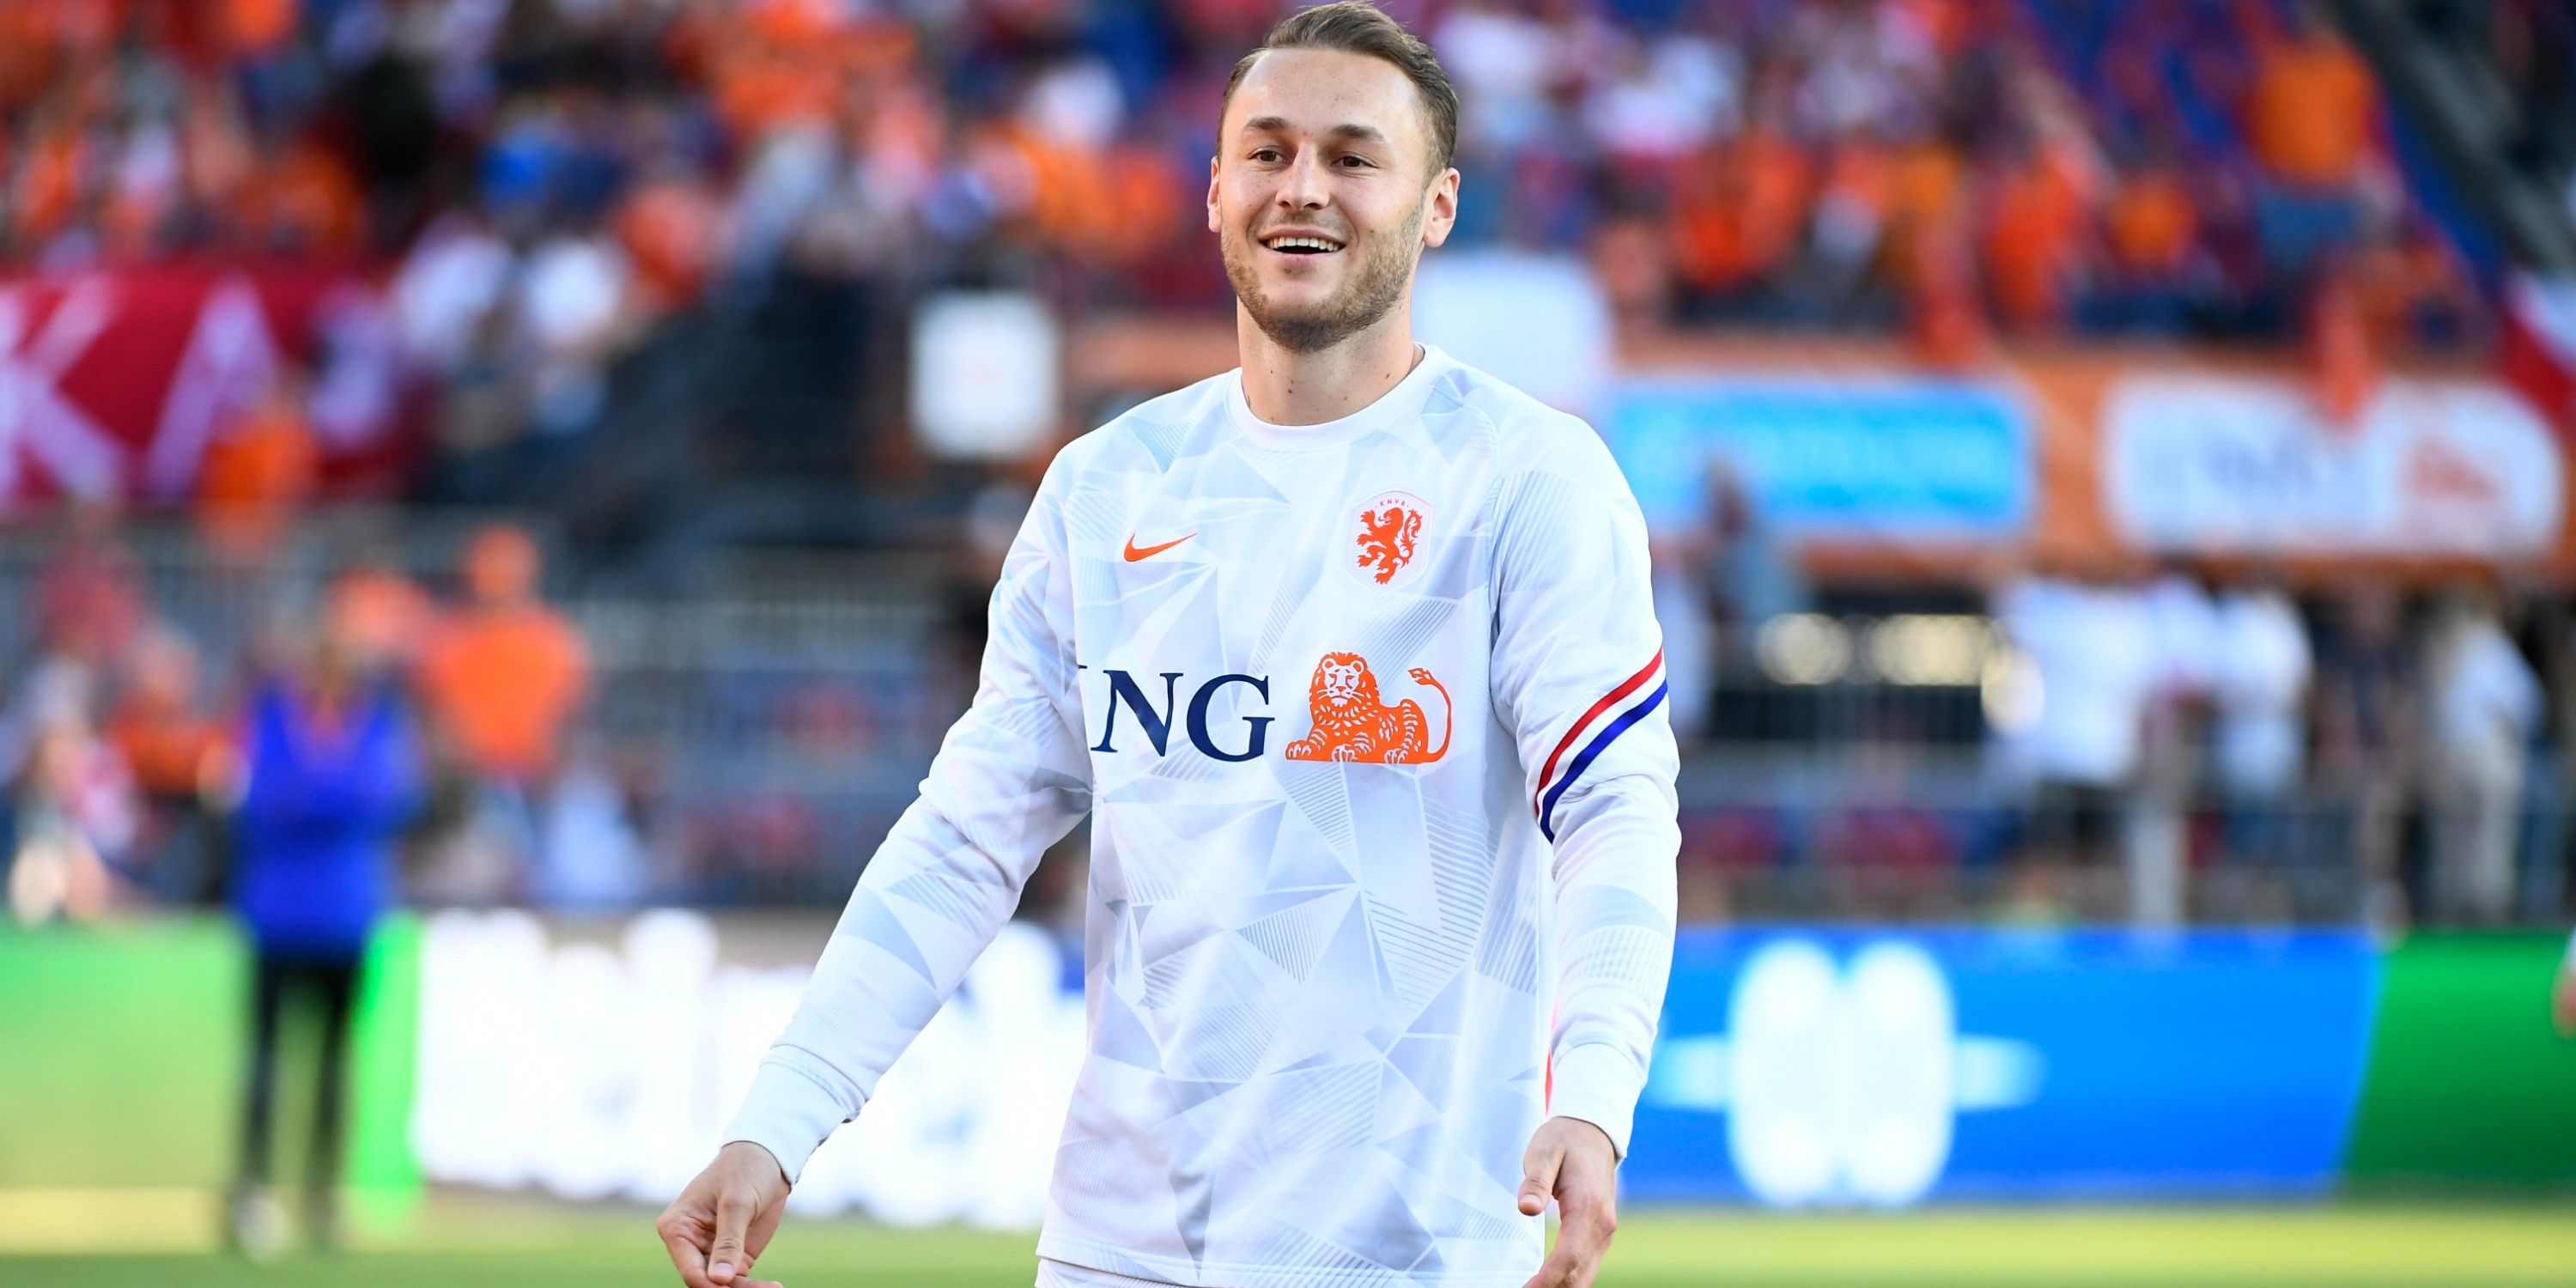 Netherlands midfielder Teun Koopmeiners